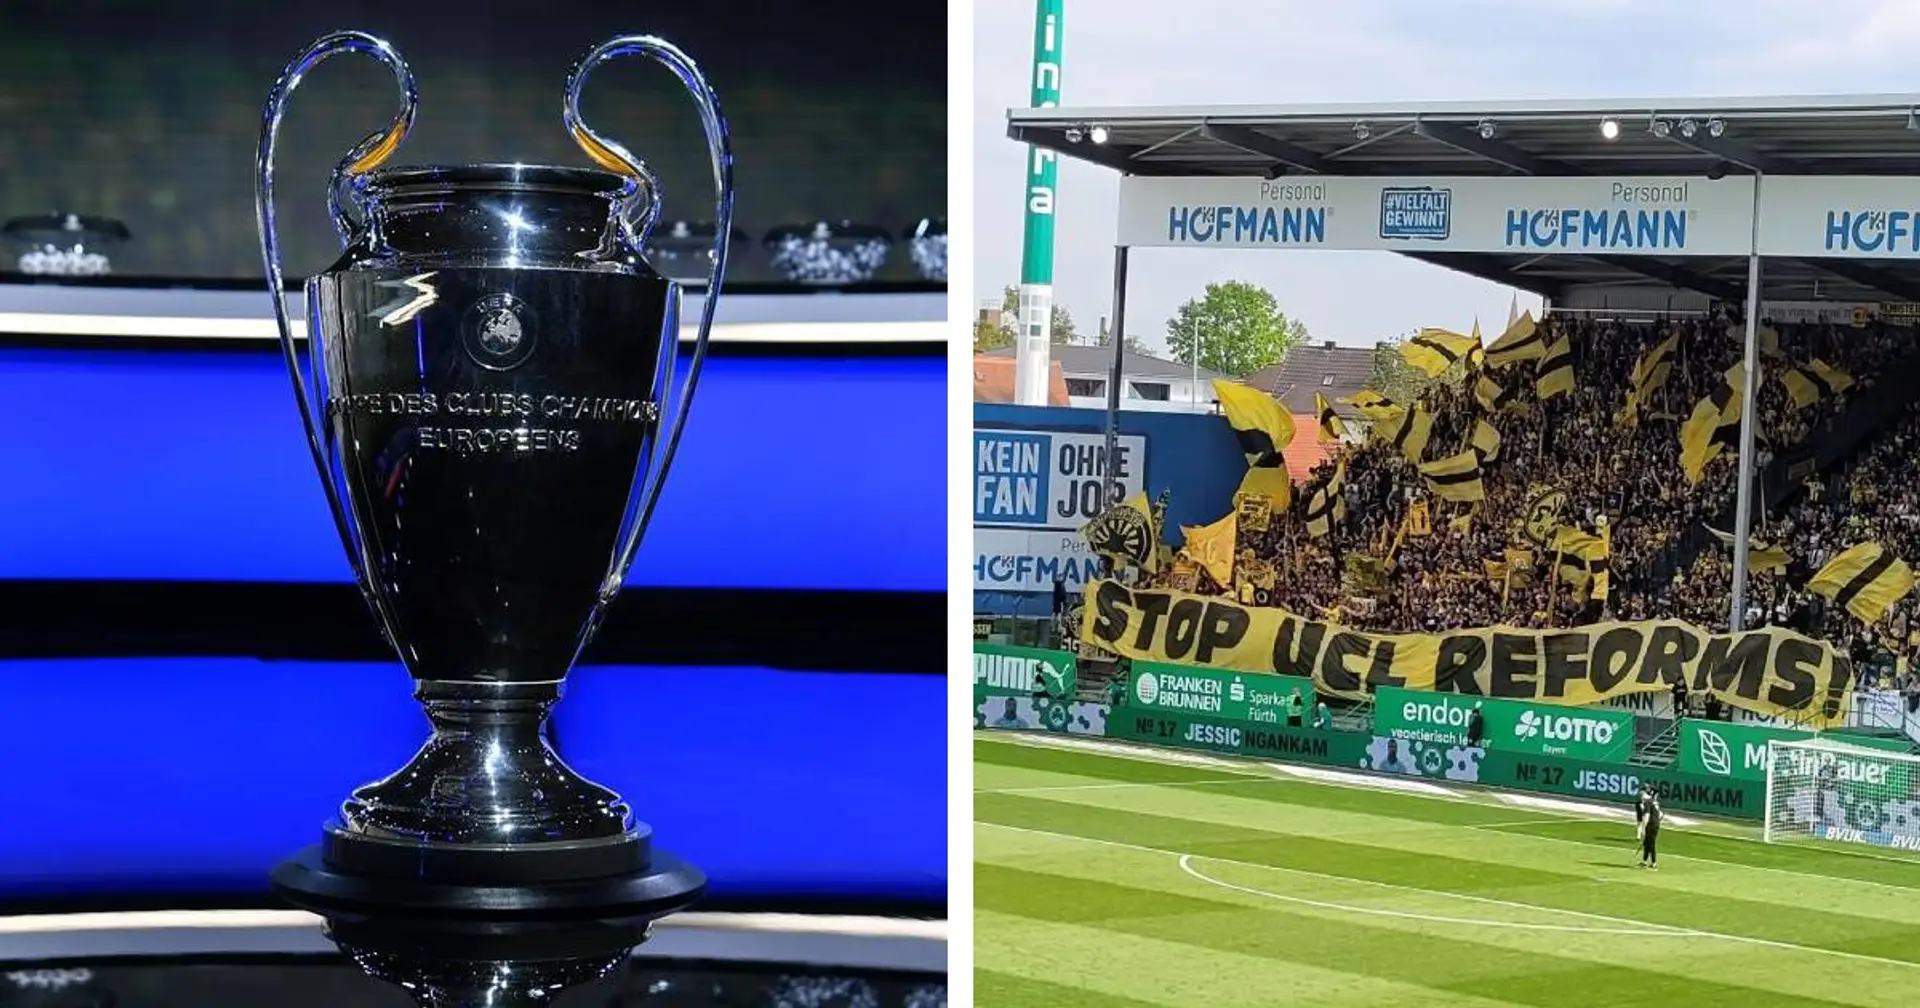 "Stop UCL Reforms": BVB-Fans positionieren sich klar gegen die UEFA-Neuerungen